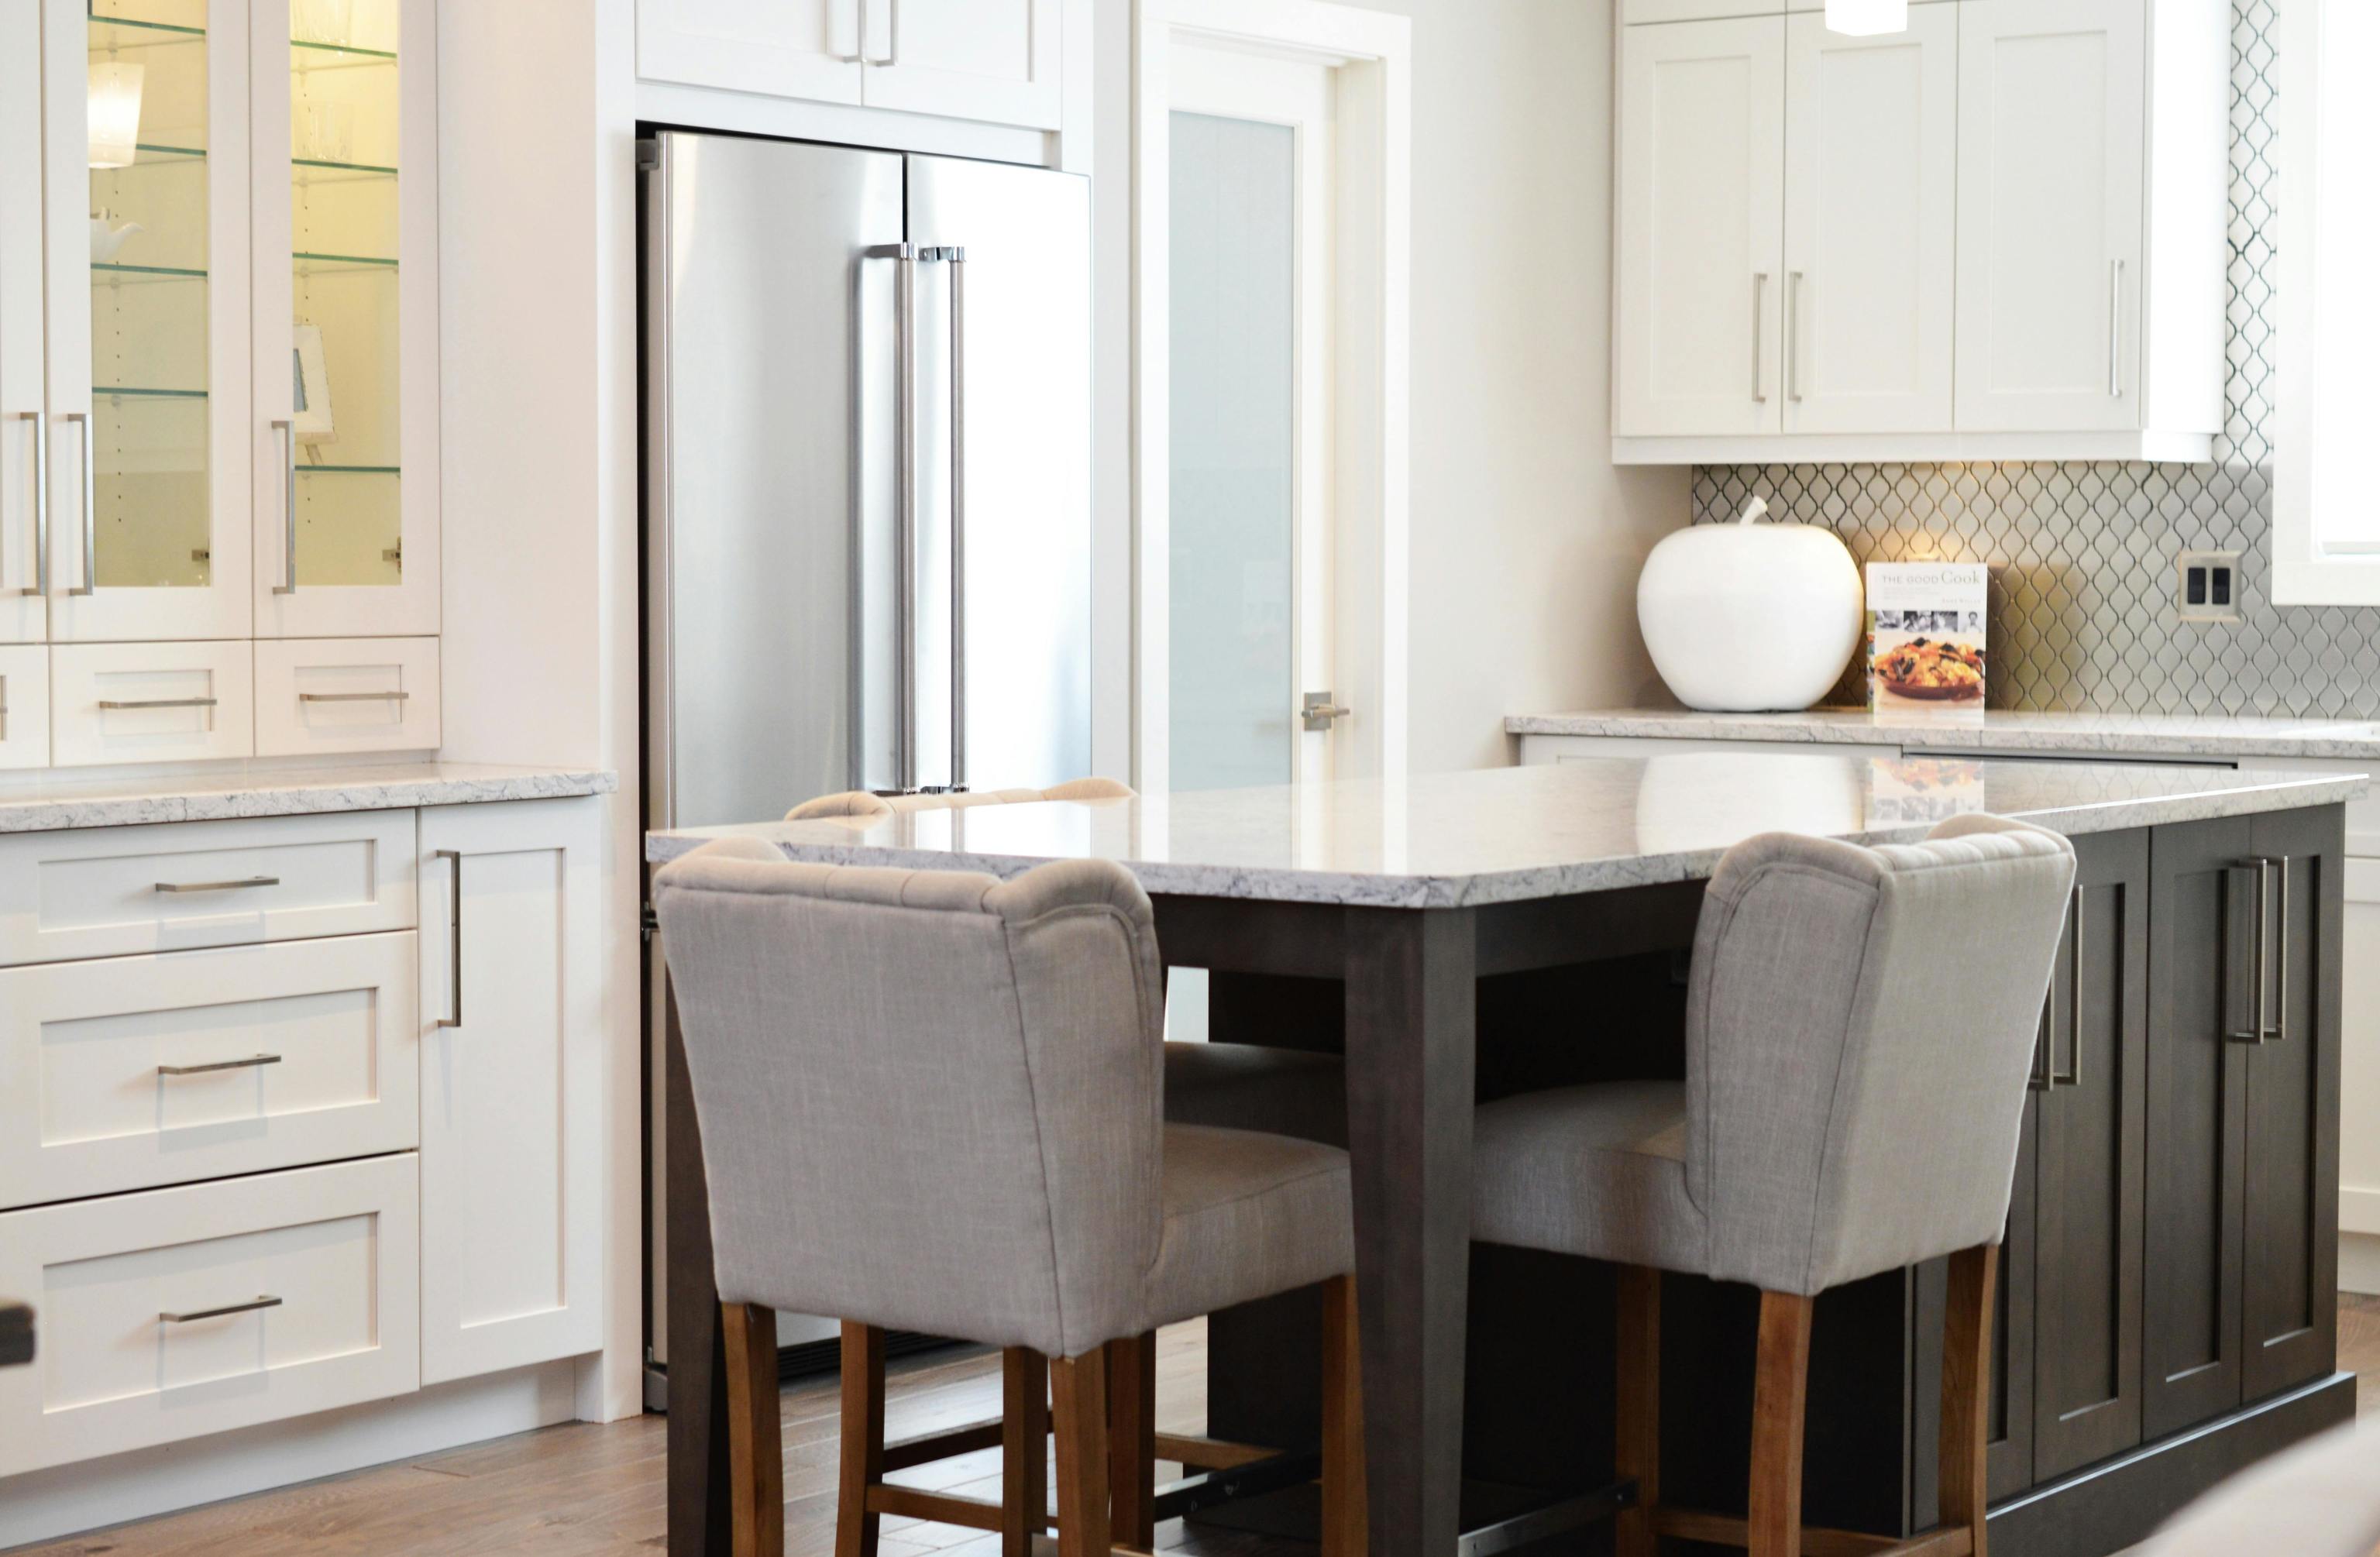 Optimiza tu cocina pequea con estas cuatro ventajas que hacen que una isla sea perfecta para espacios reducidos